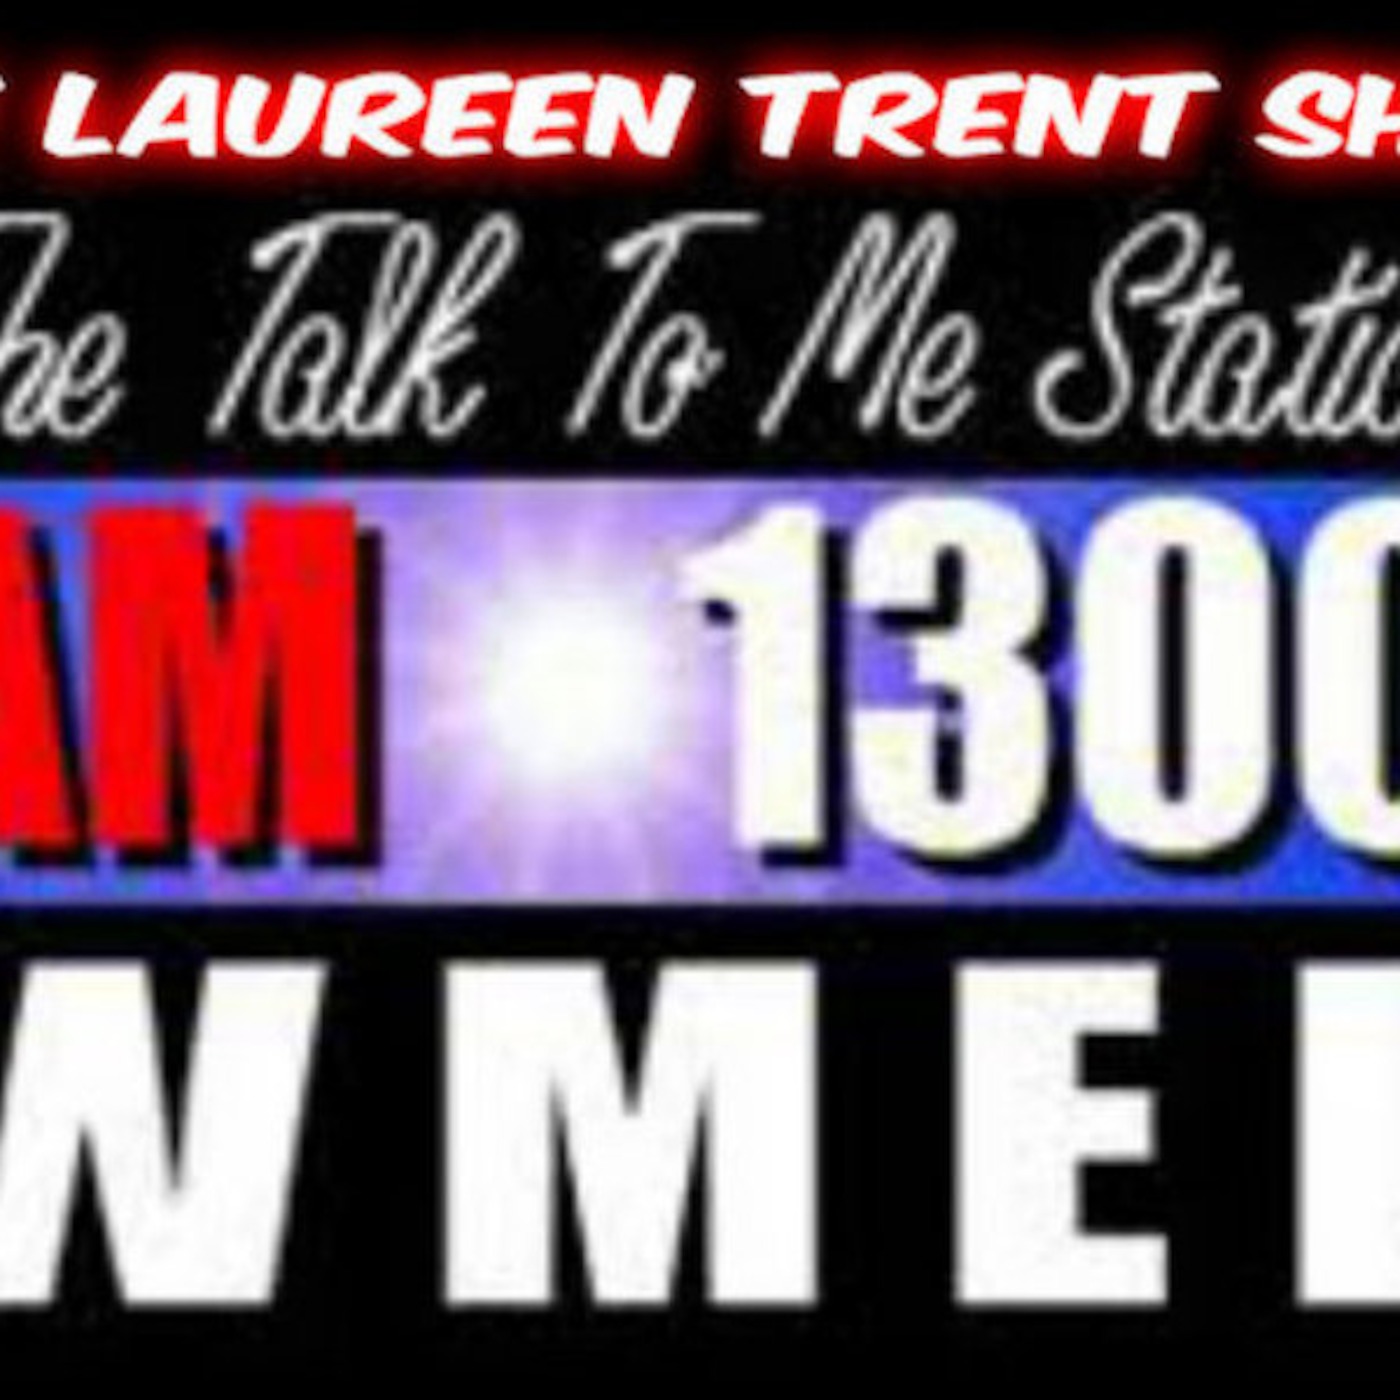 Episode 8 Laureen Trent Show WMEL 1300AM   